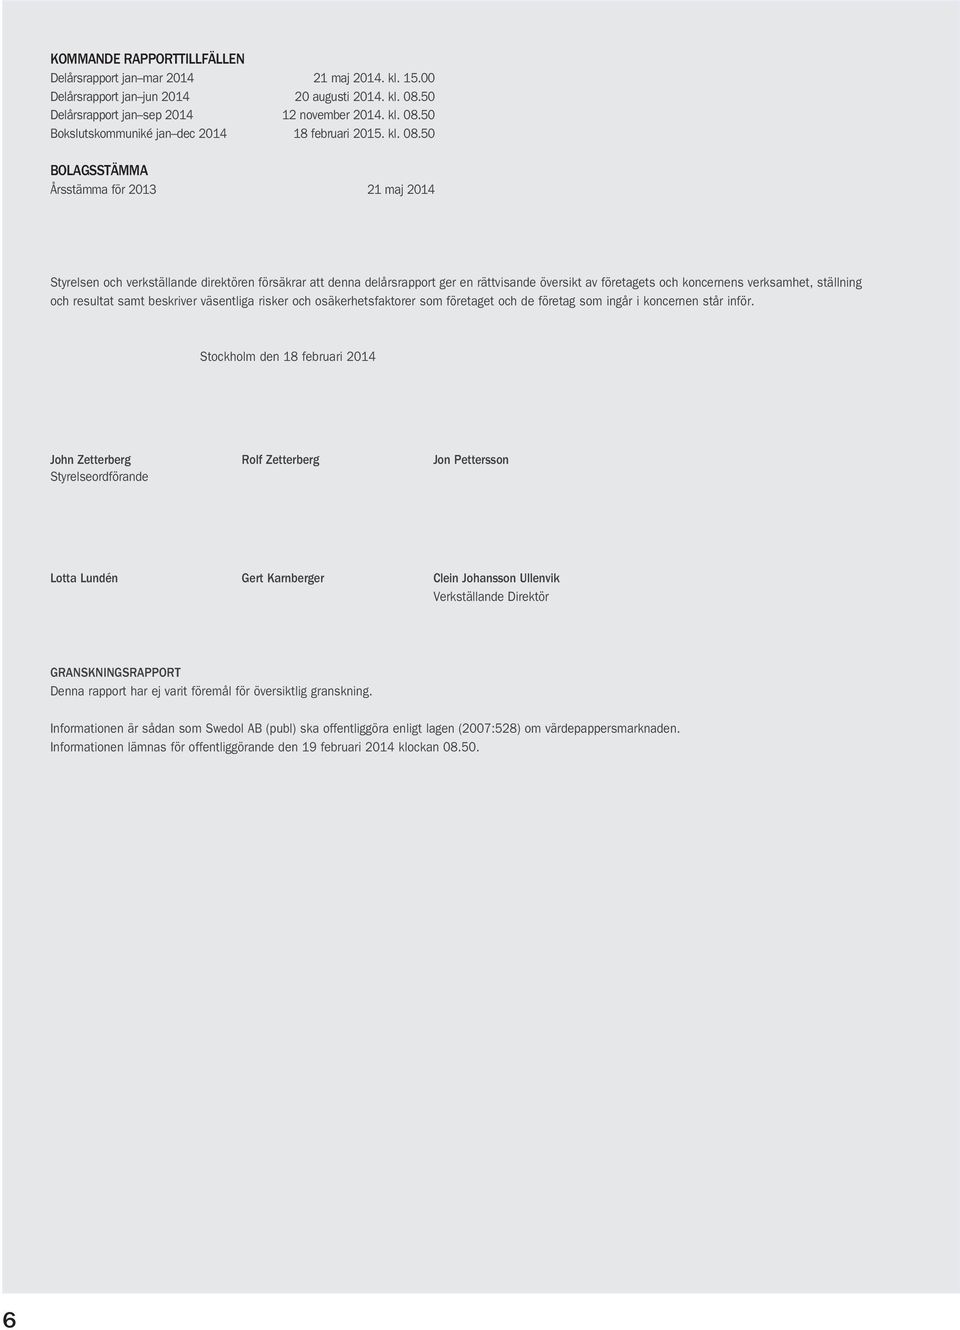 50 BOLAGSSTÄMMA Årsstämma för 2013 21 maj 2014 Styrelsen och verkställande direktören försäkrar att denna delårsrapport ger en rättvisande översikt av företagets och koncernens verksamhet, ställning